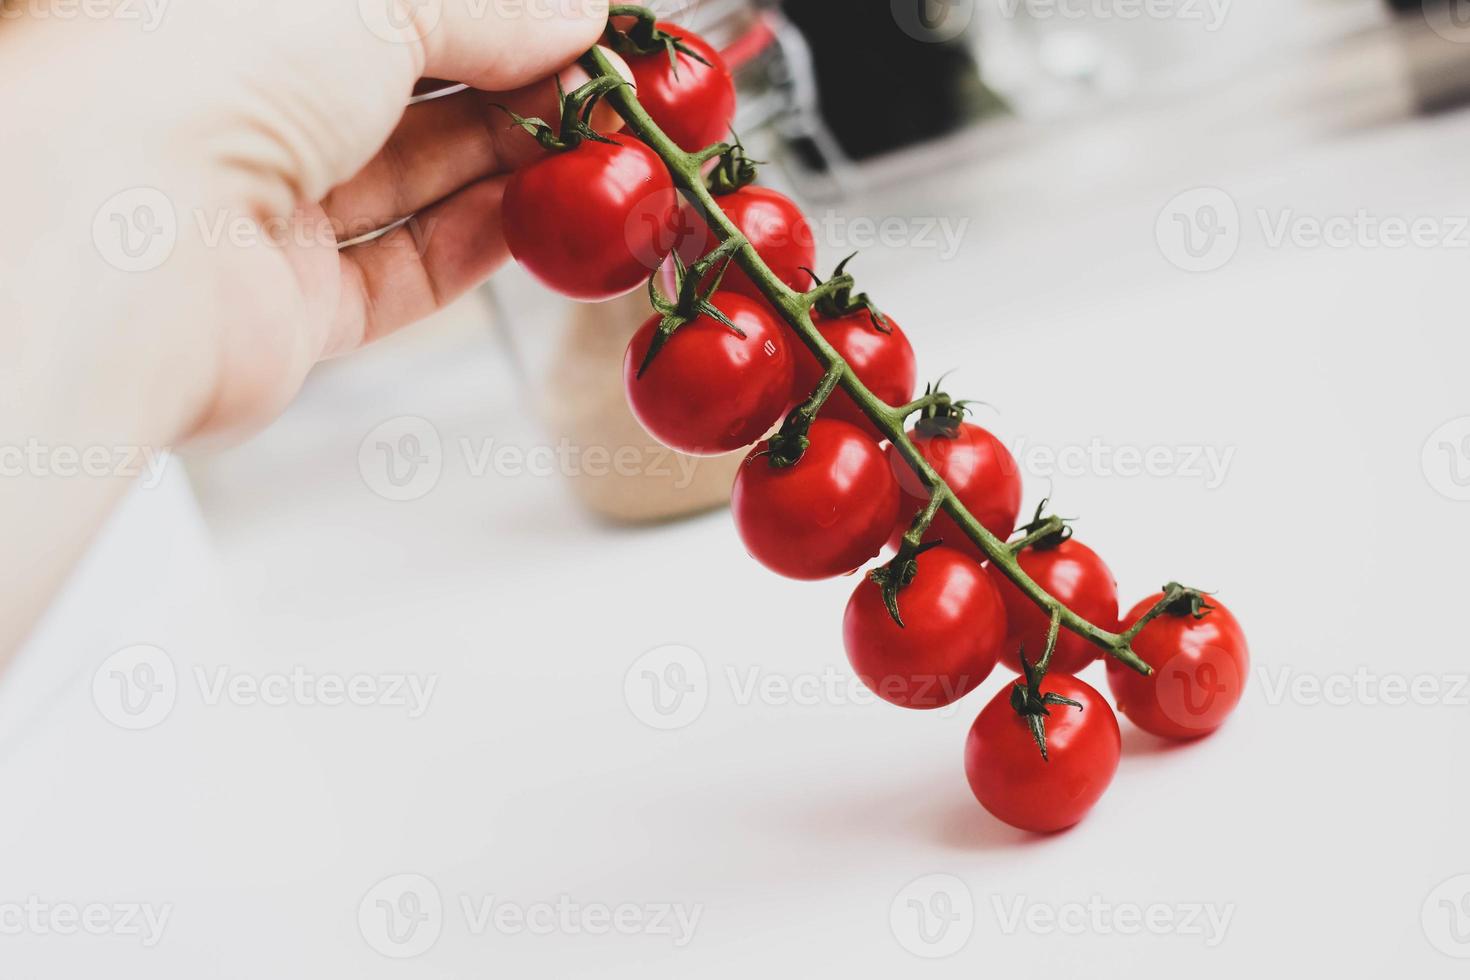 tas de tomates cerises biologiques fraîches. photo